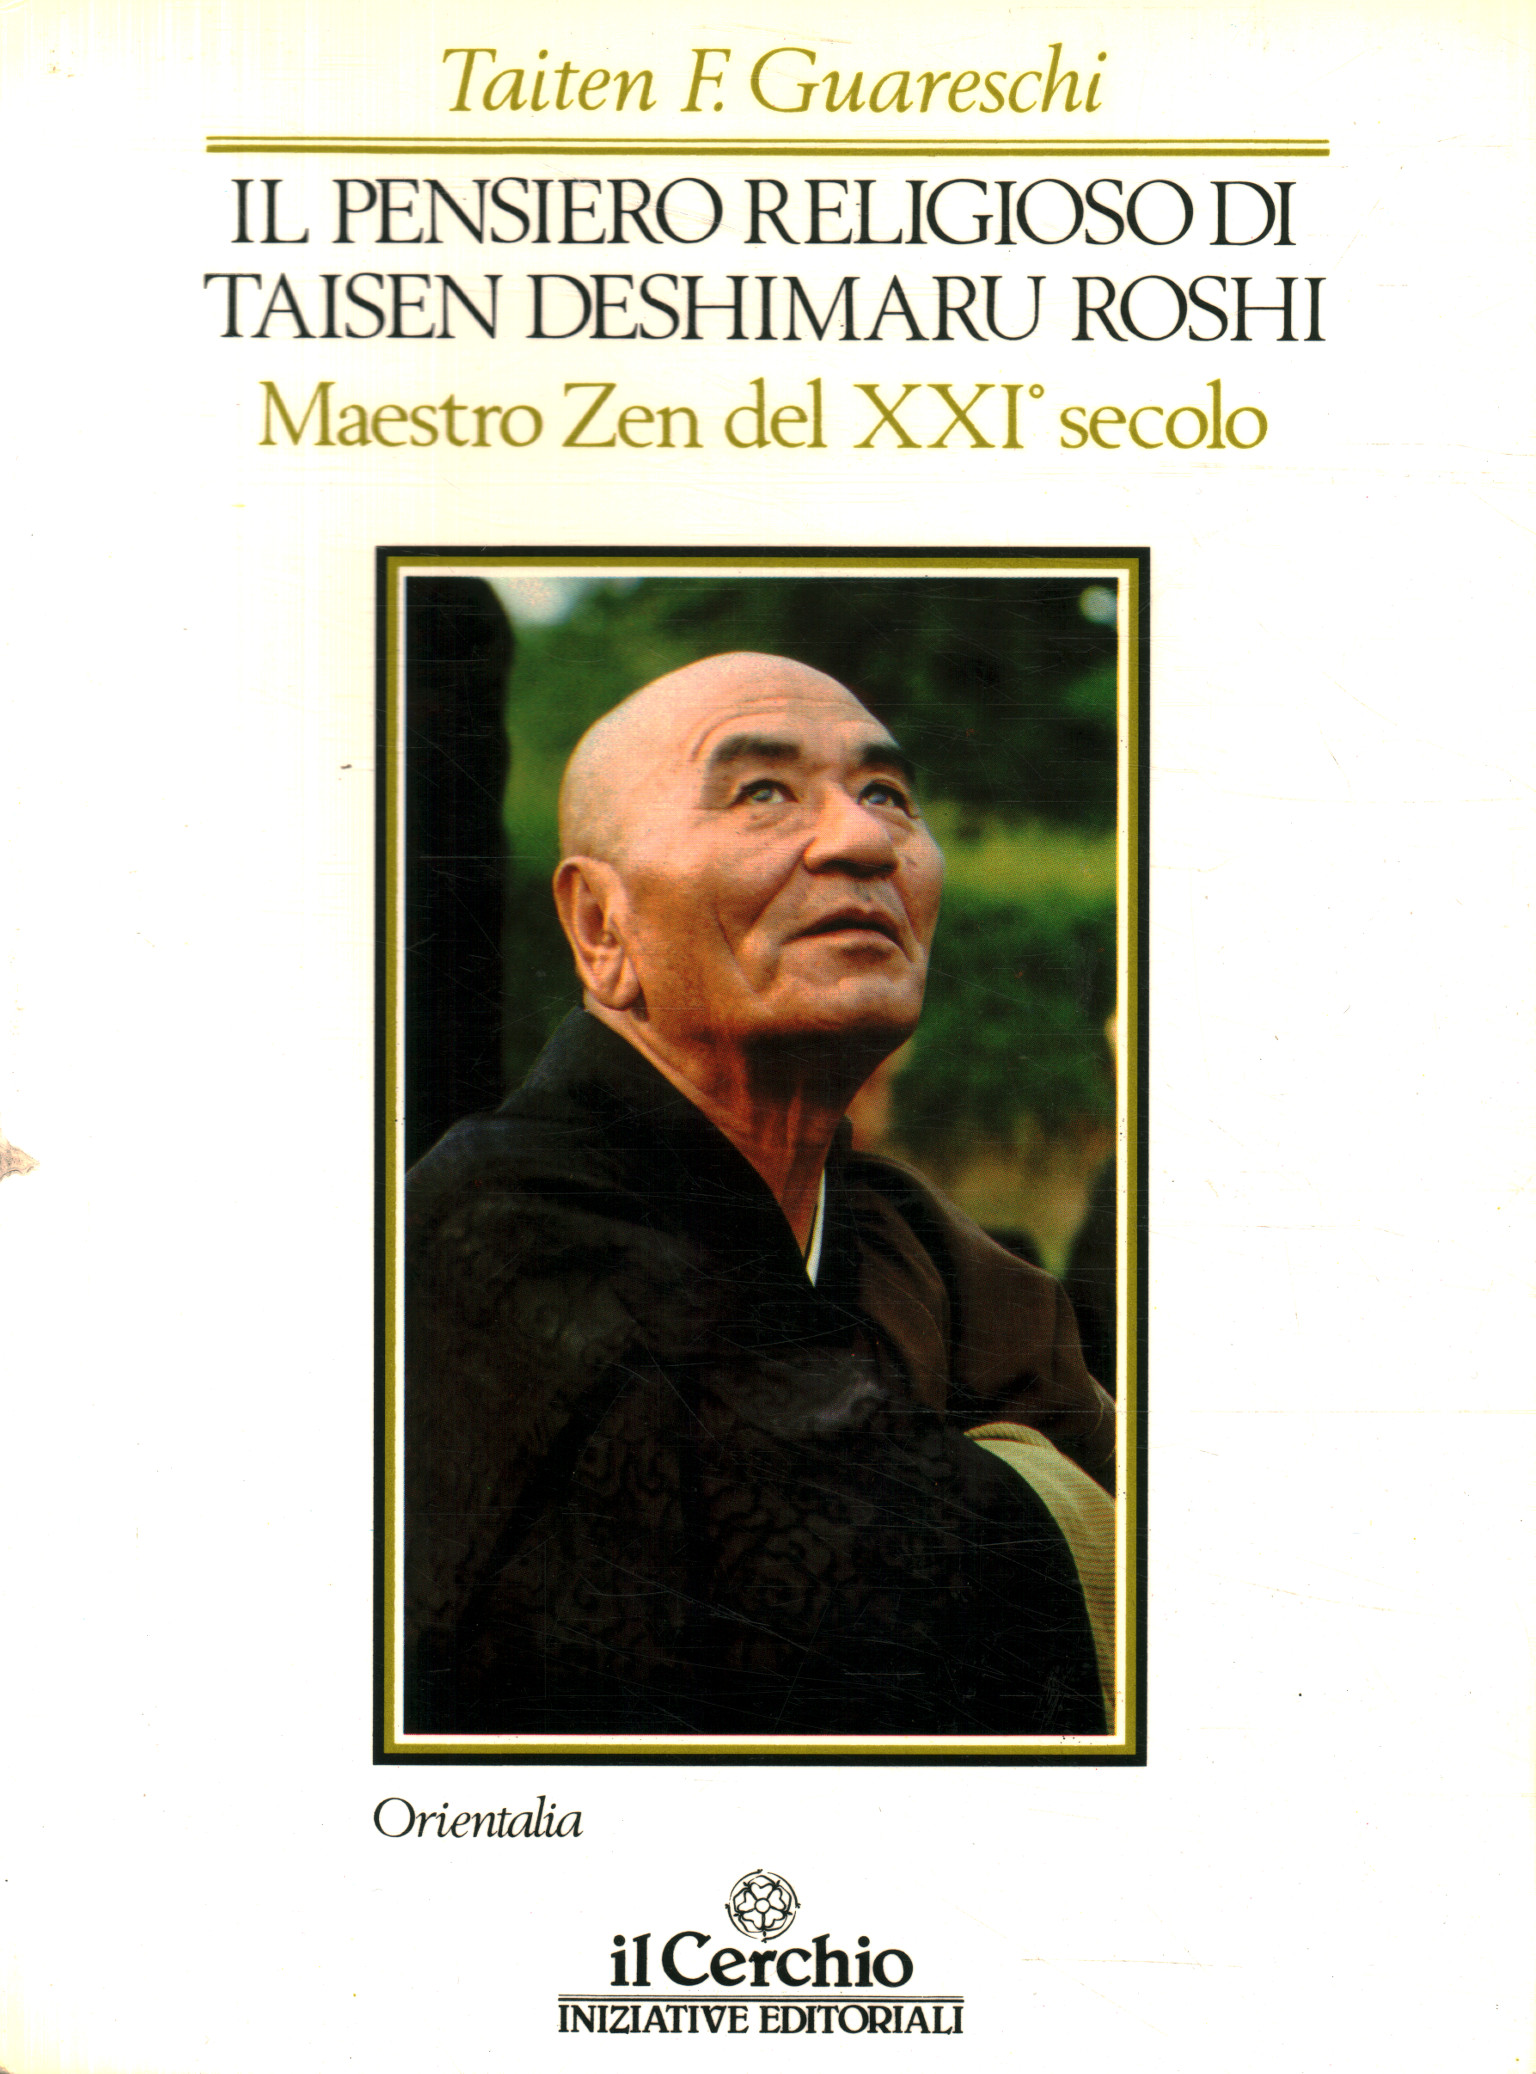 The religious thought of Taisen Deshimar